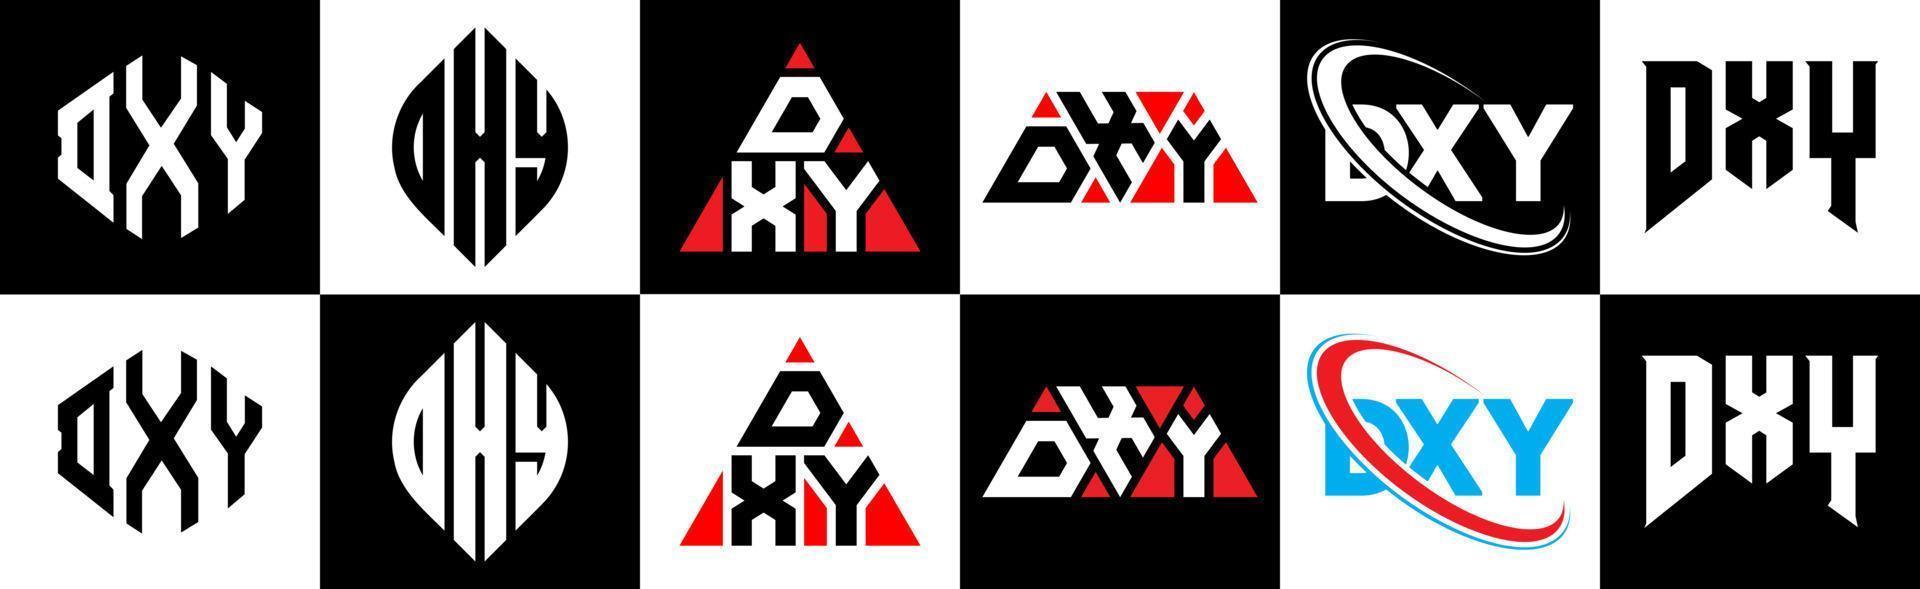 dxy brief logo ontwerp in zes stijl. dxy veelhoek, cirkel, driehoek, zeshoek, vlak en gemakkelijk stijl met zwart en wit kleur variatie brief logo reeks in een tekengebied. dxy minimalistische en klassiek logo vector